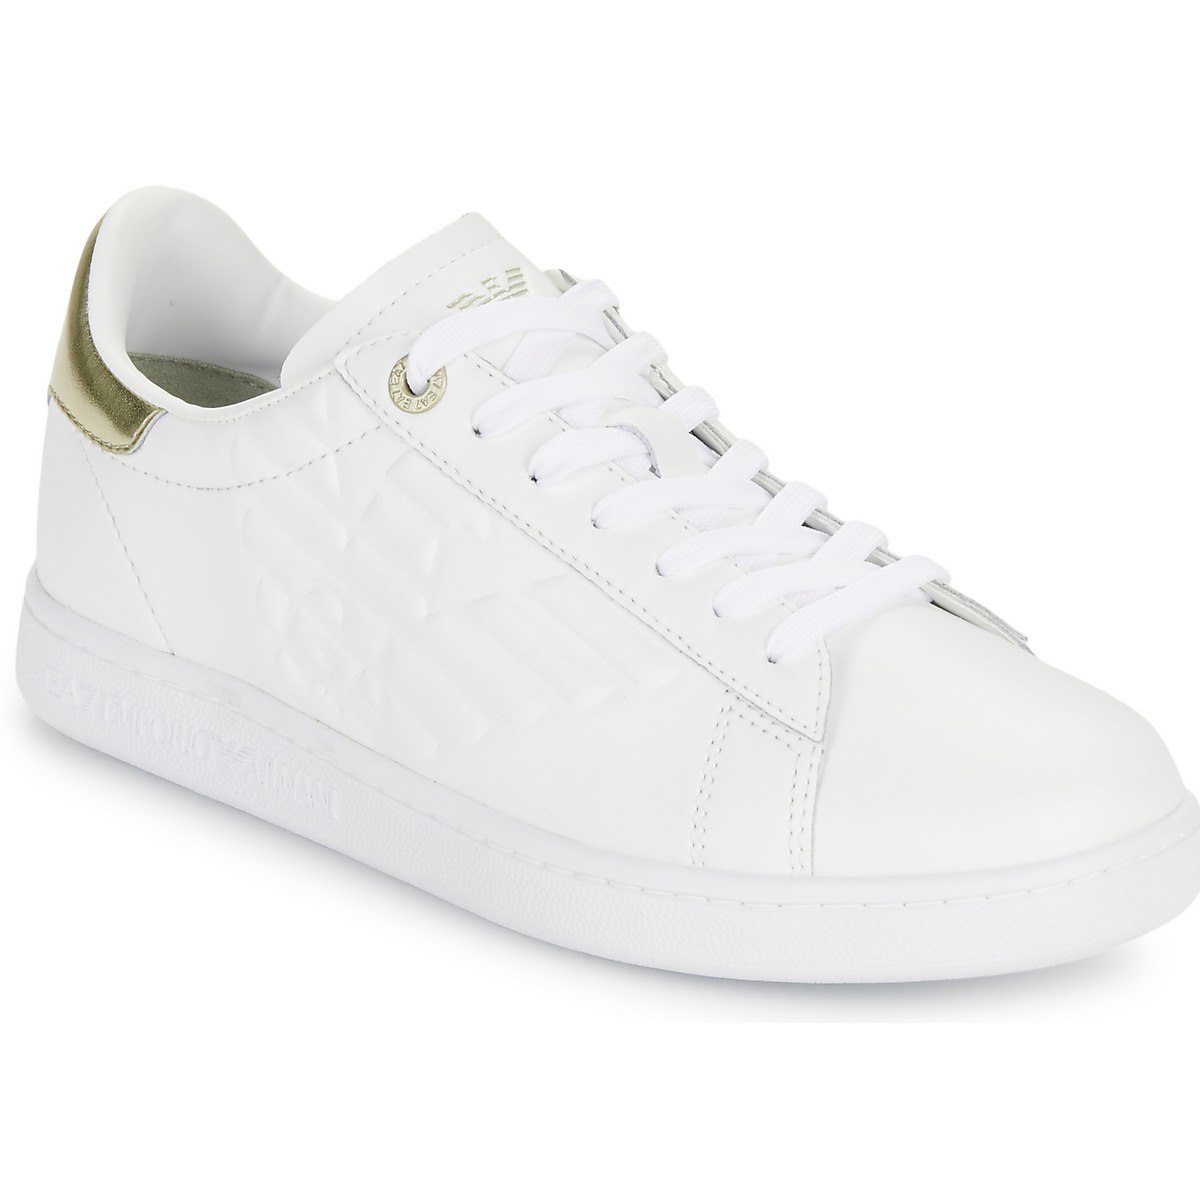 Παπούτσια Γυναίκα Χαμηλά Sneakers Emporio Armani EA7 CLASSIC NEW CC Άσπρο